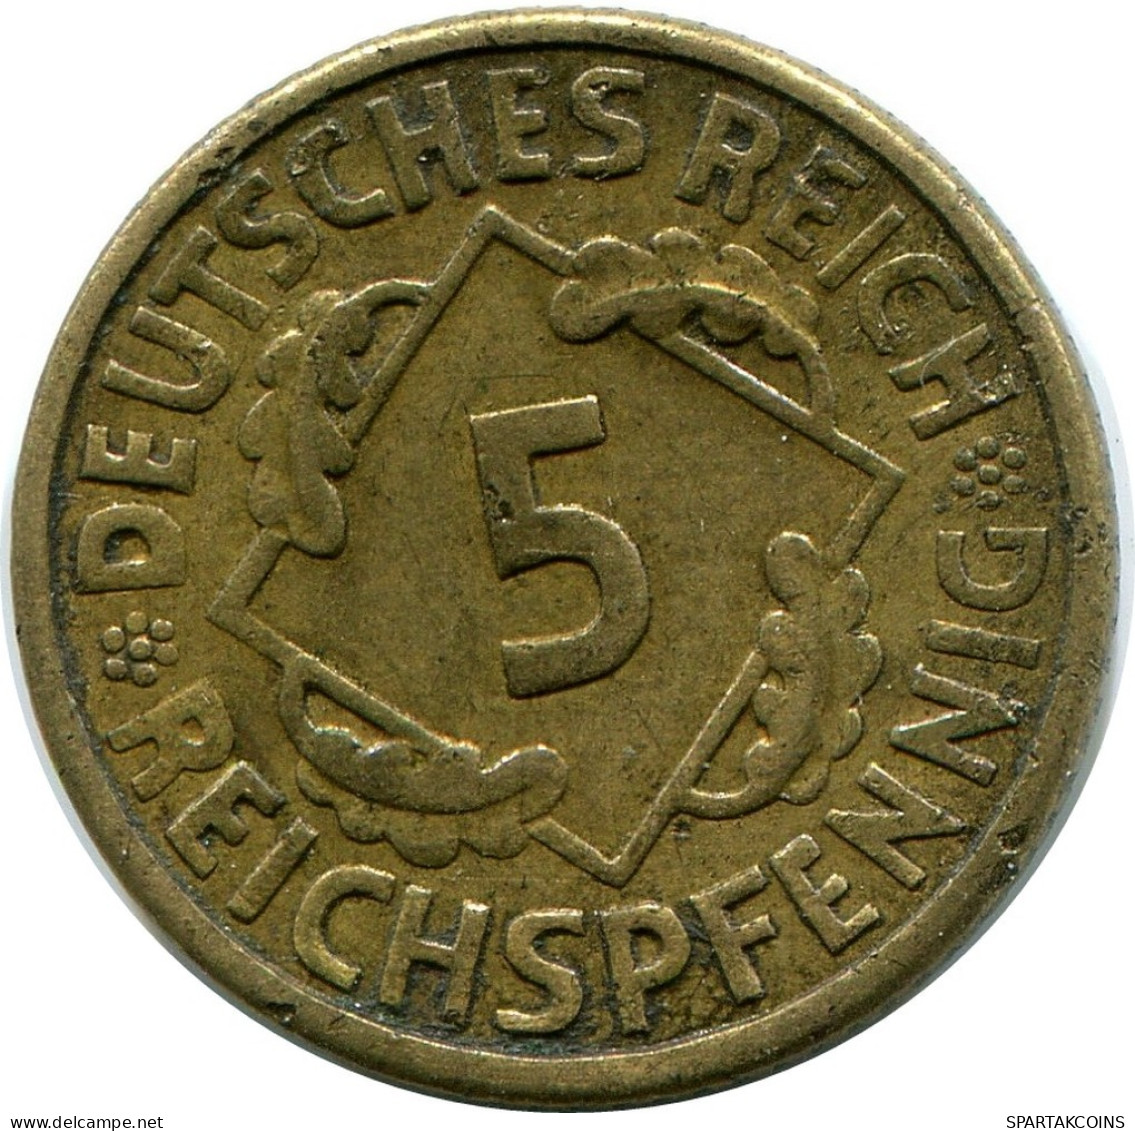 5 REICHSPFENNIG 1926 A GERMANY Coin #DB878.U.A - 5 Renten- & 5 Reichspfennig